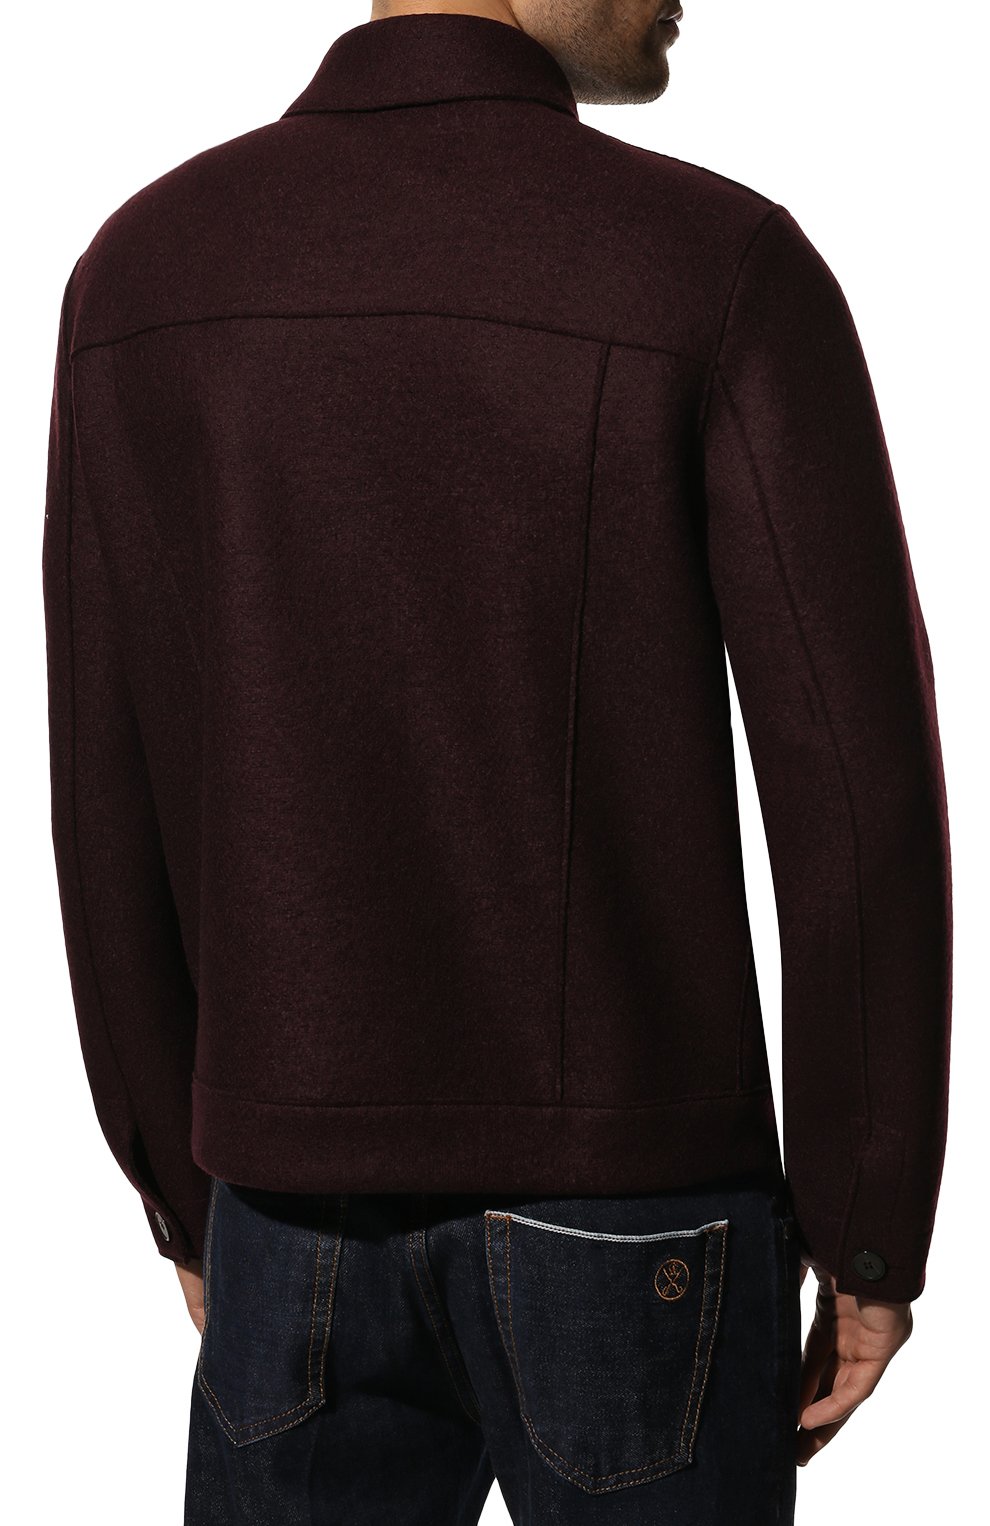 Мужская шерстяная куртка HARRIS WHARF LONDON бордового цвета, арт. C9331MLK | Фото 4 (Кросс-КТ: Куртка; Мужское Кросс-КТ: шерсть и кашемир; Материал внешний: Шерсть; Рукава: Длинные; Длина (верхняя одежда): Короткие; Стили: Кэжуэл)